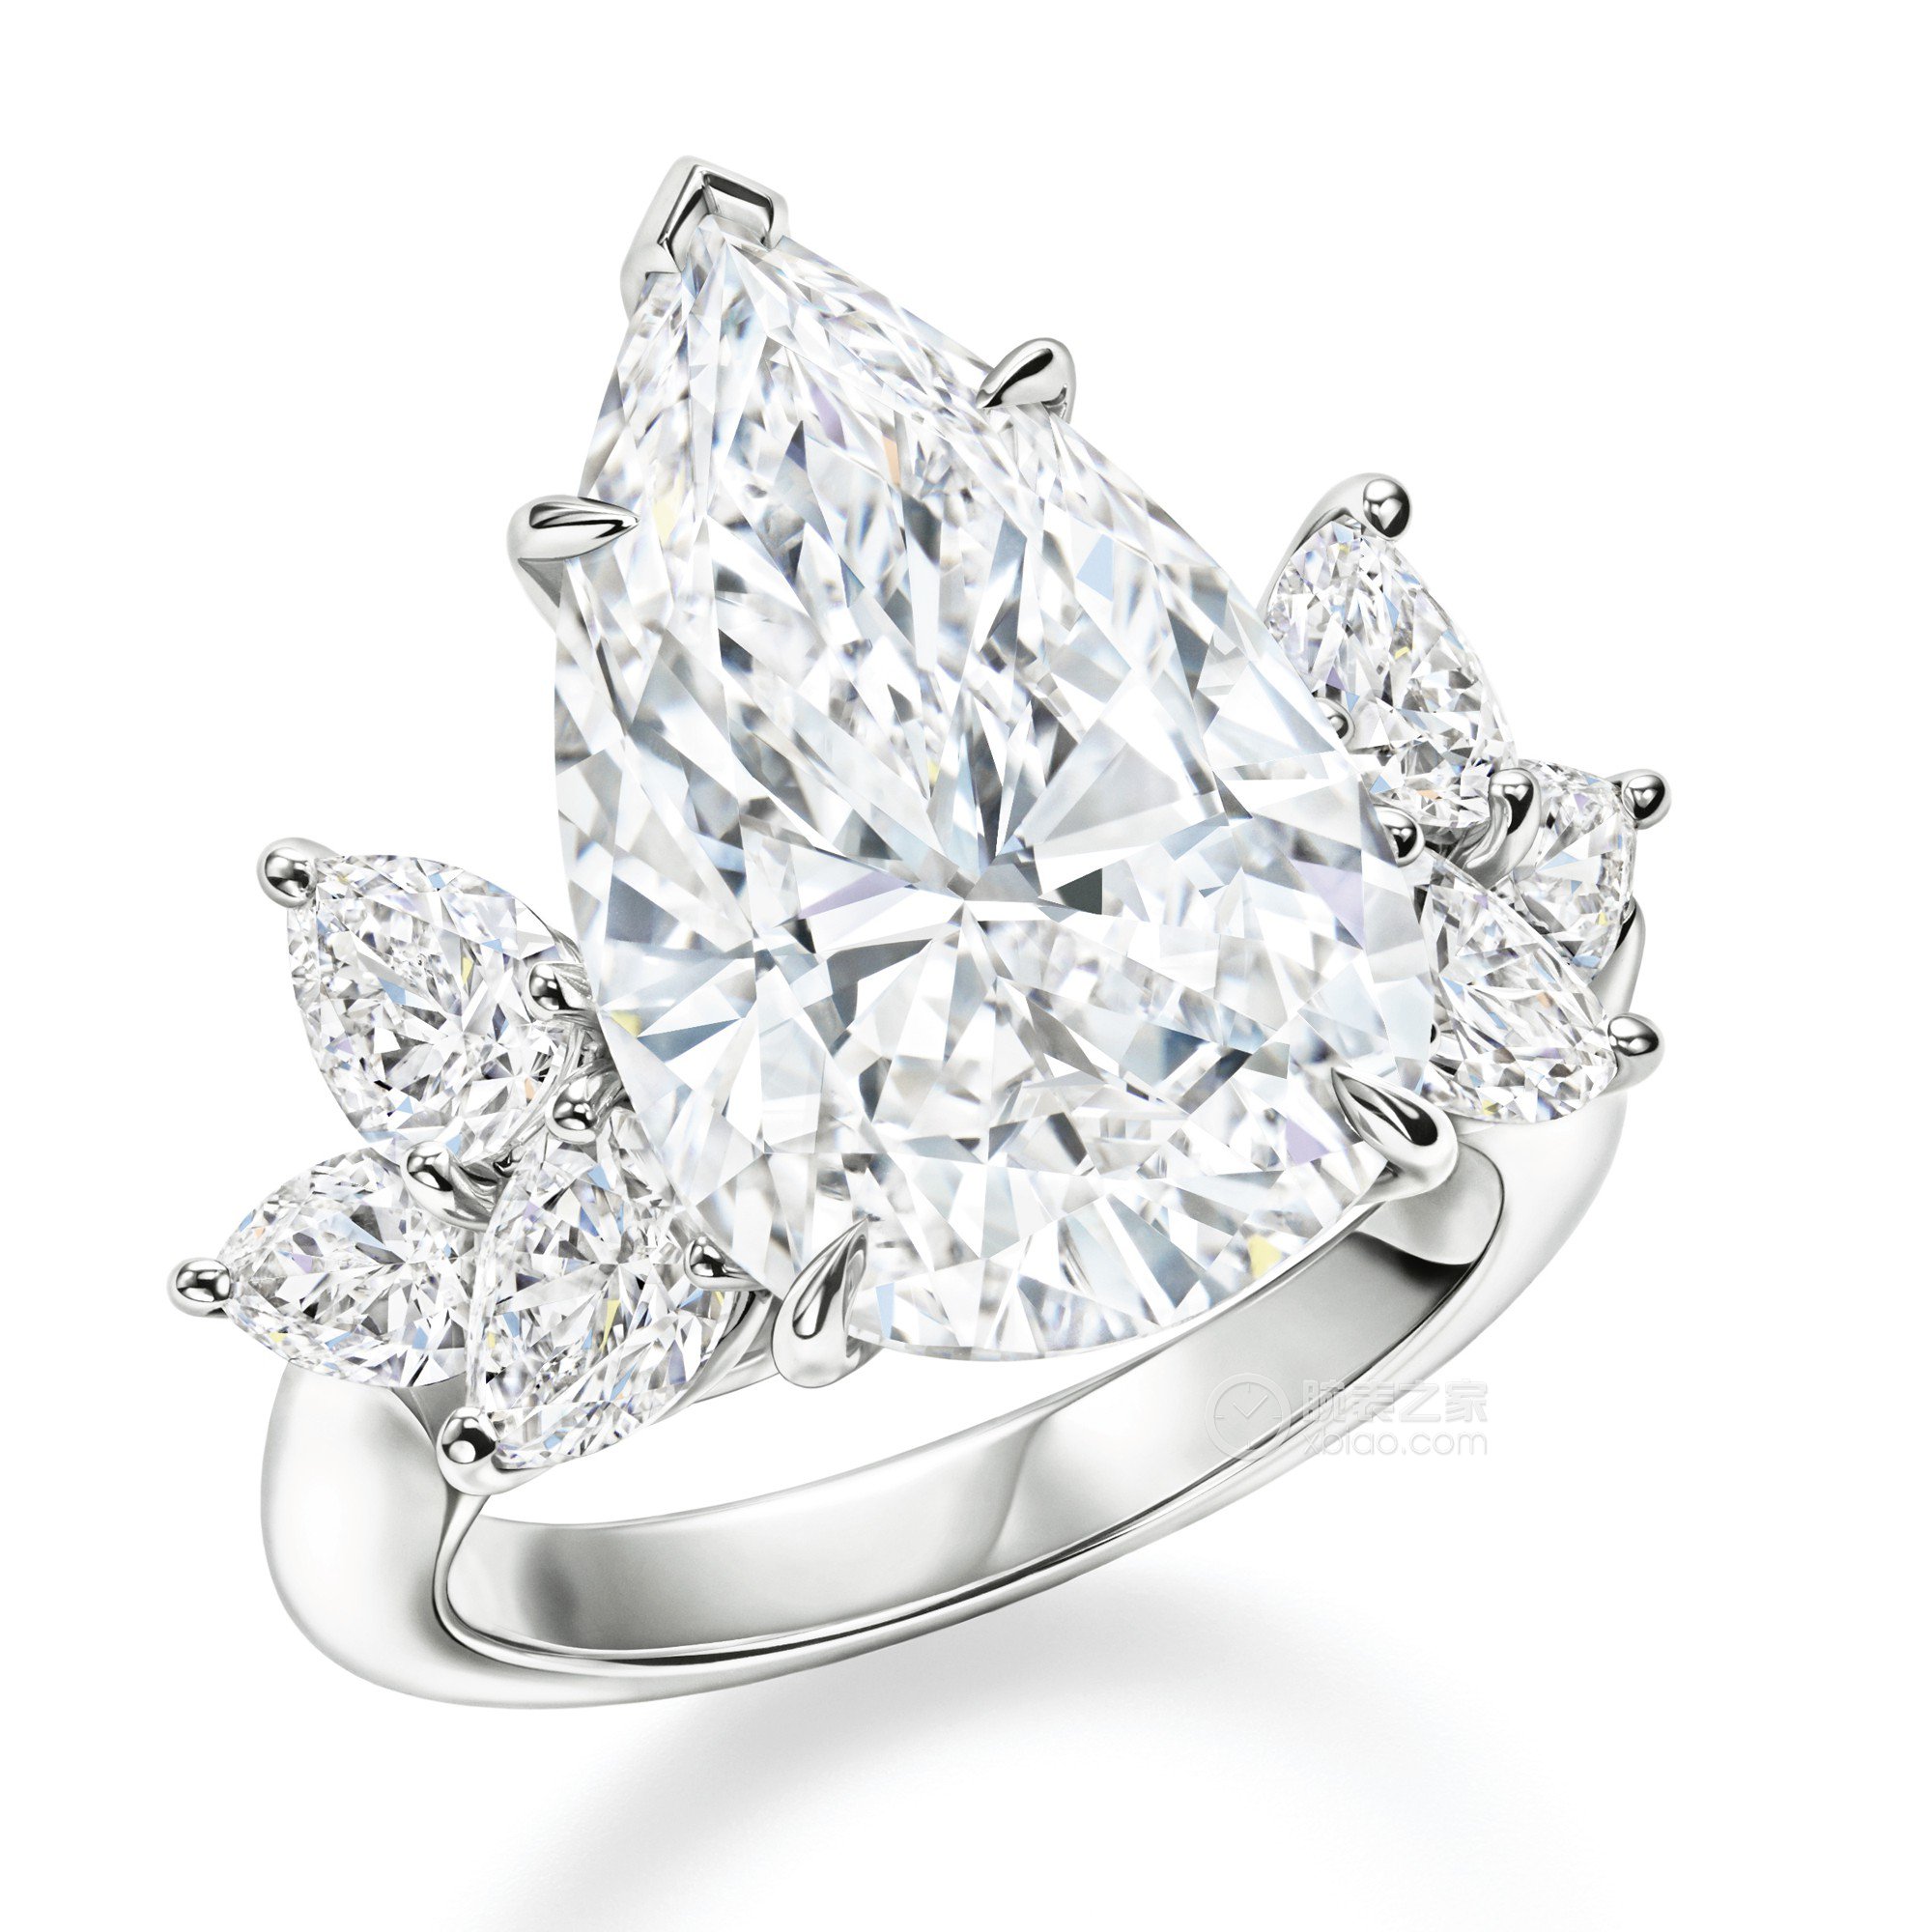 海瑞温斯顿LEGACY COLLECTIONLegacy高级珠宝系列钻石戒指戒指